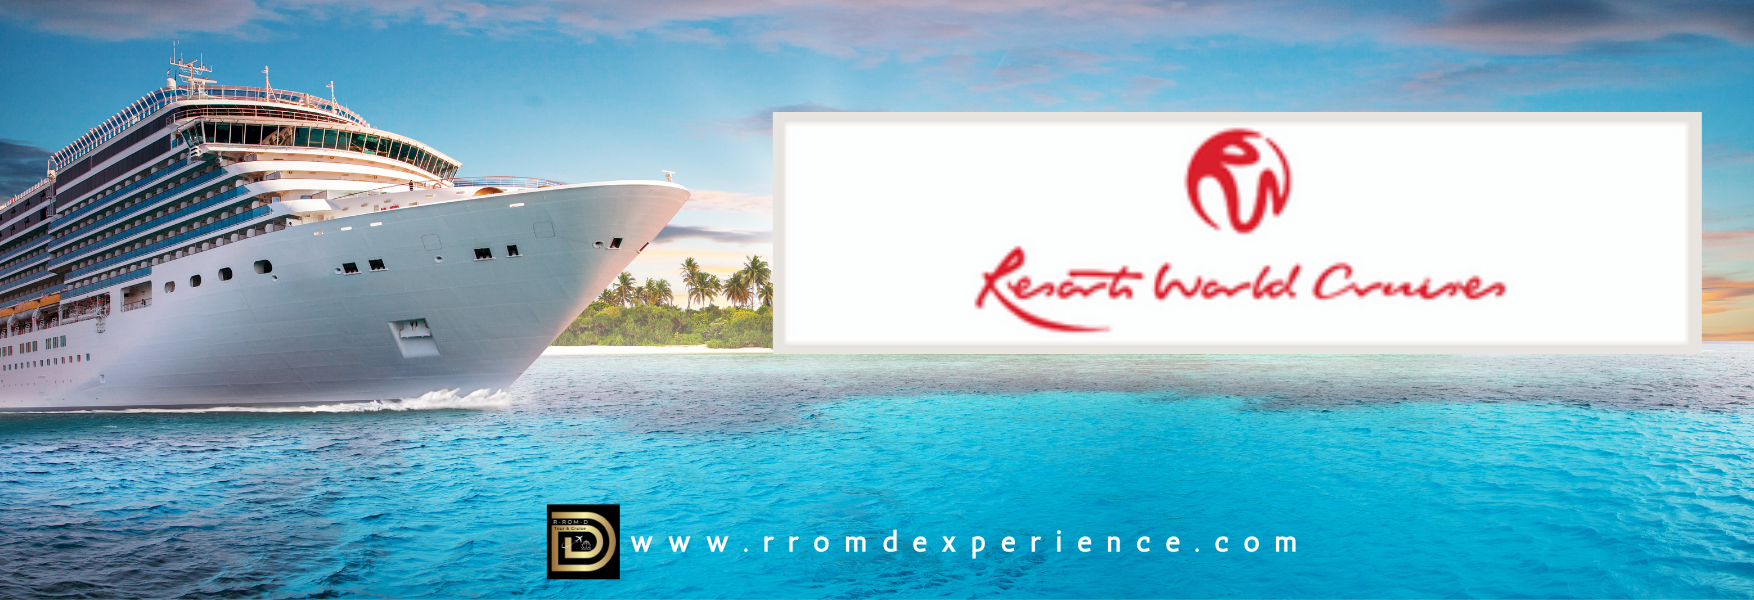 Resort World Cruise